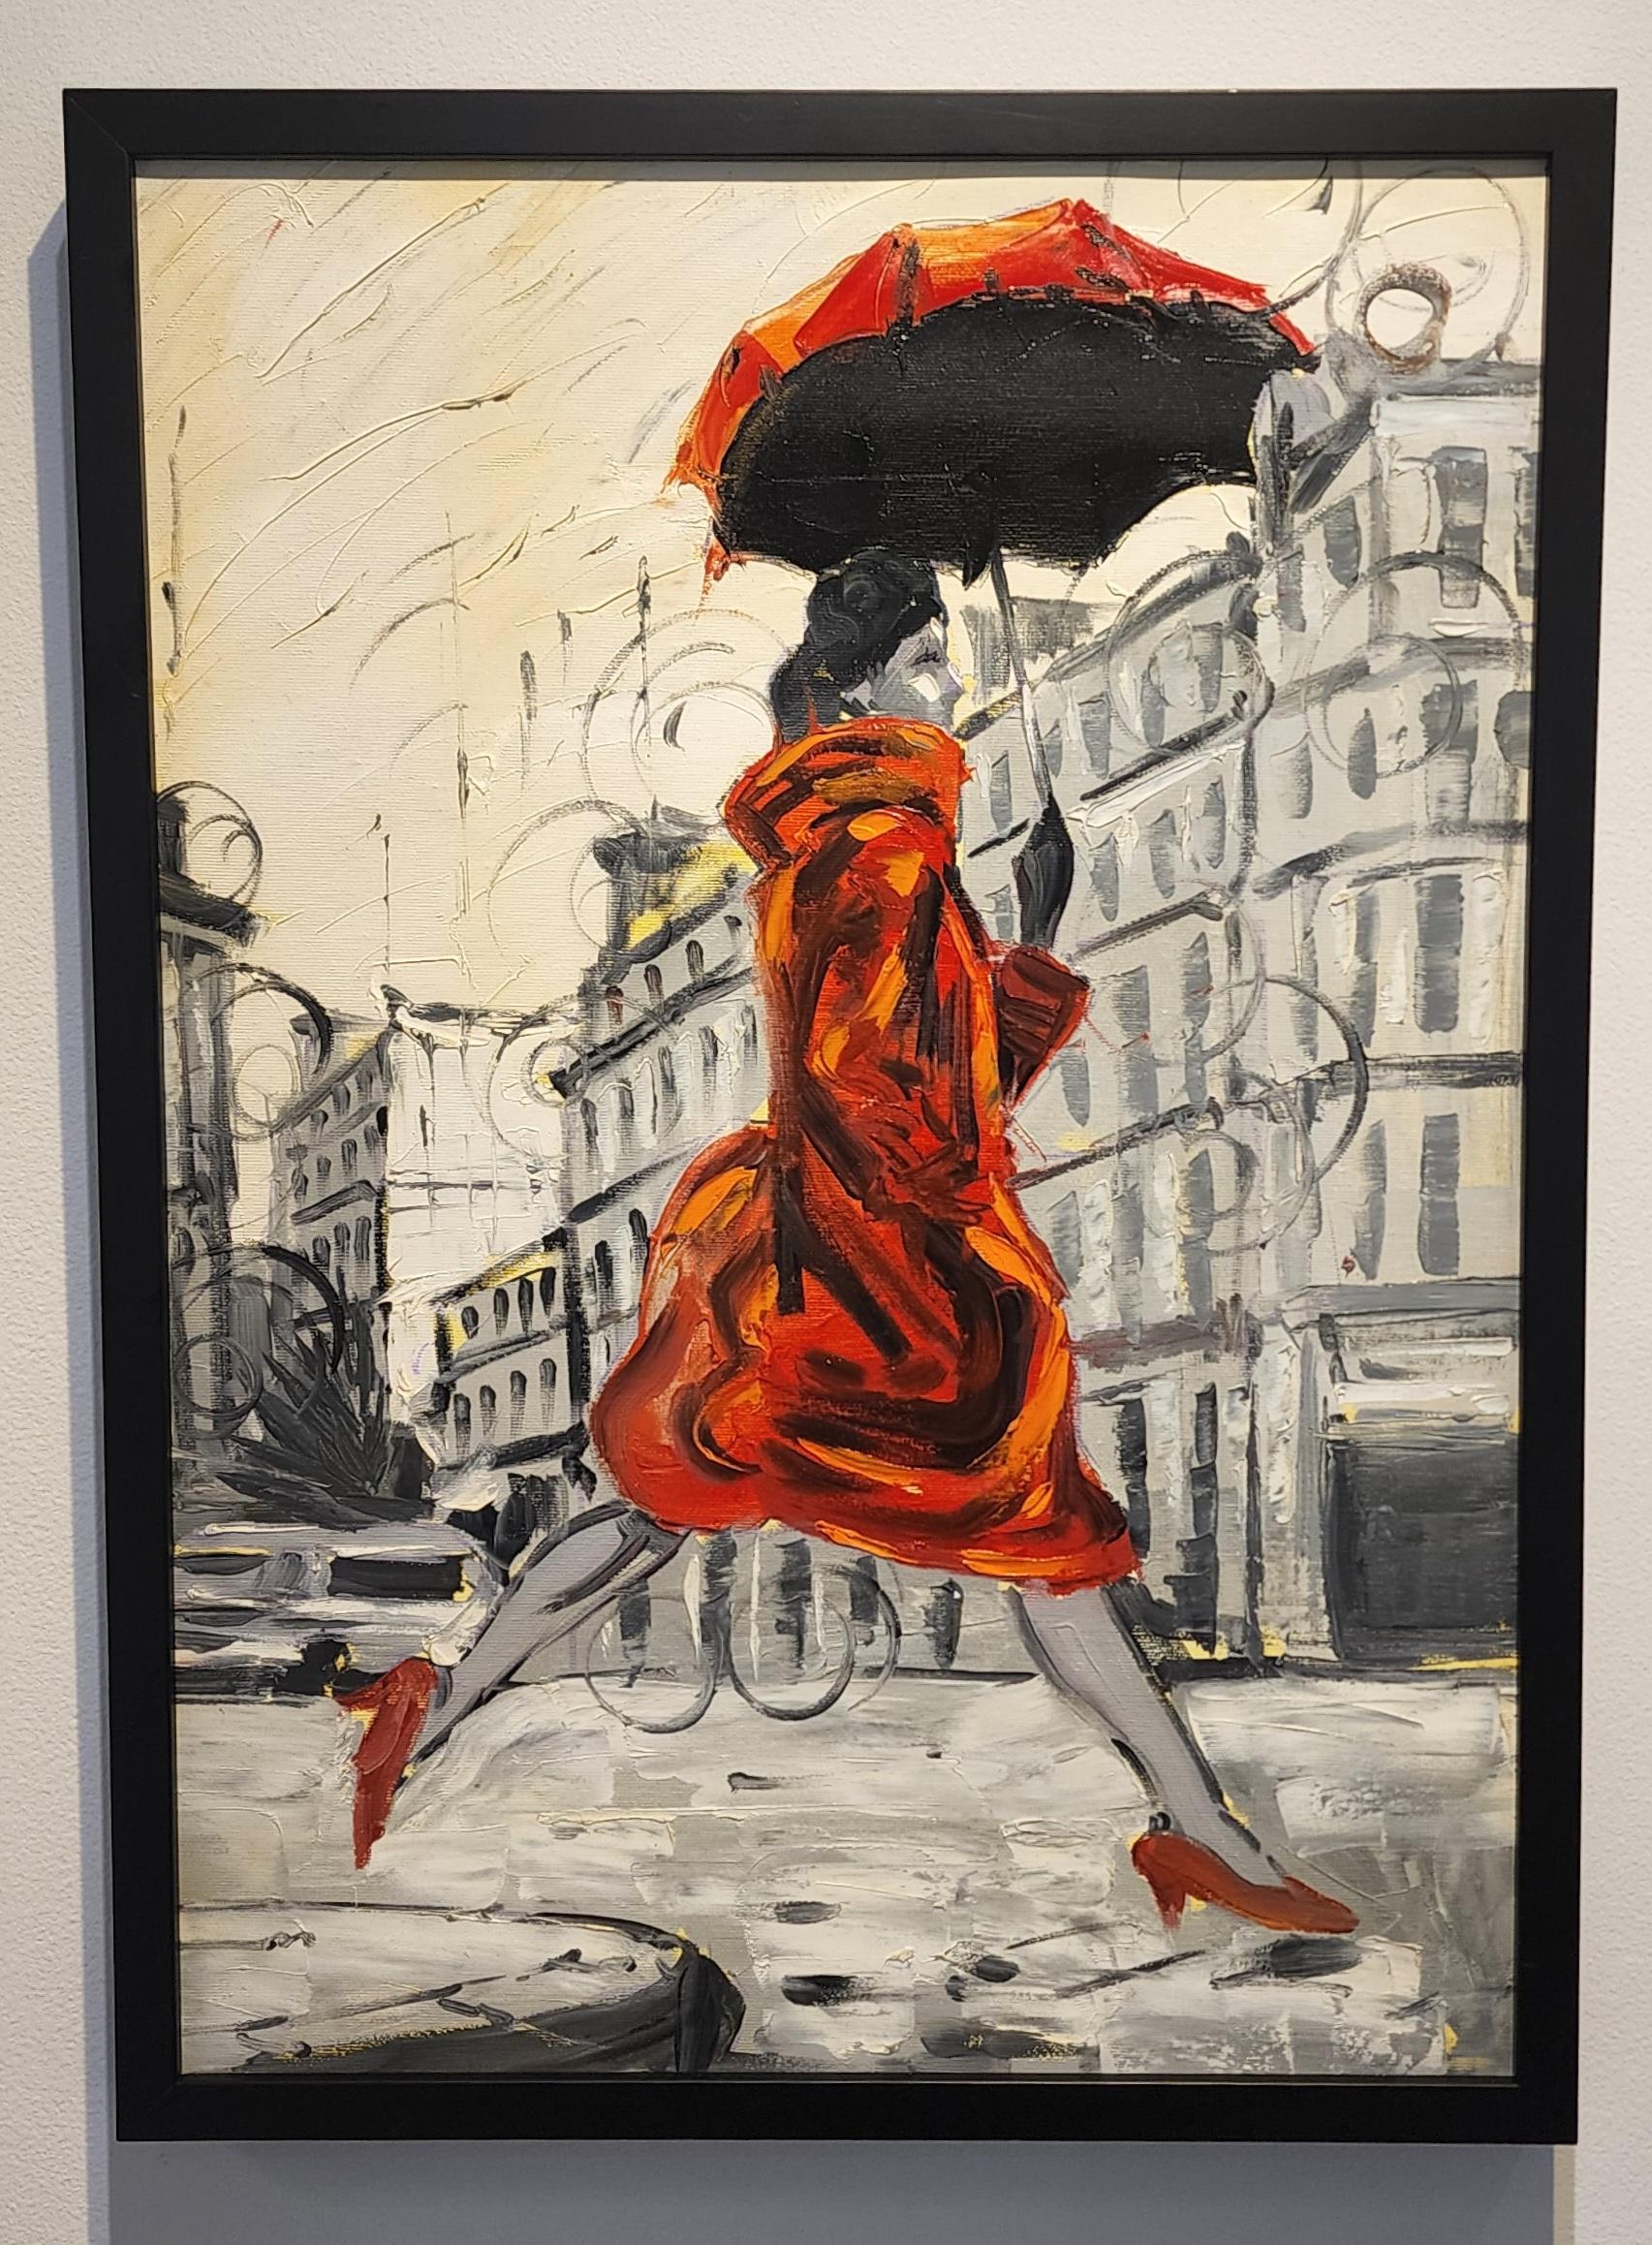 Coco X   Impressionnisme   Artistics cubains  Paris   France  Huile sur toile - Painting de Cristian Mesa Velazquez